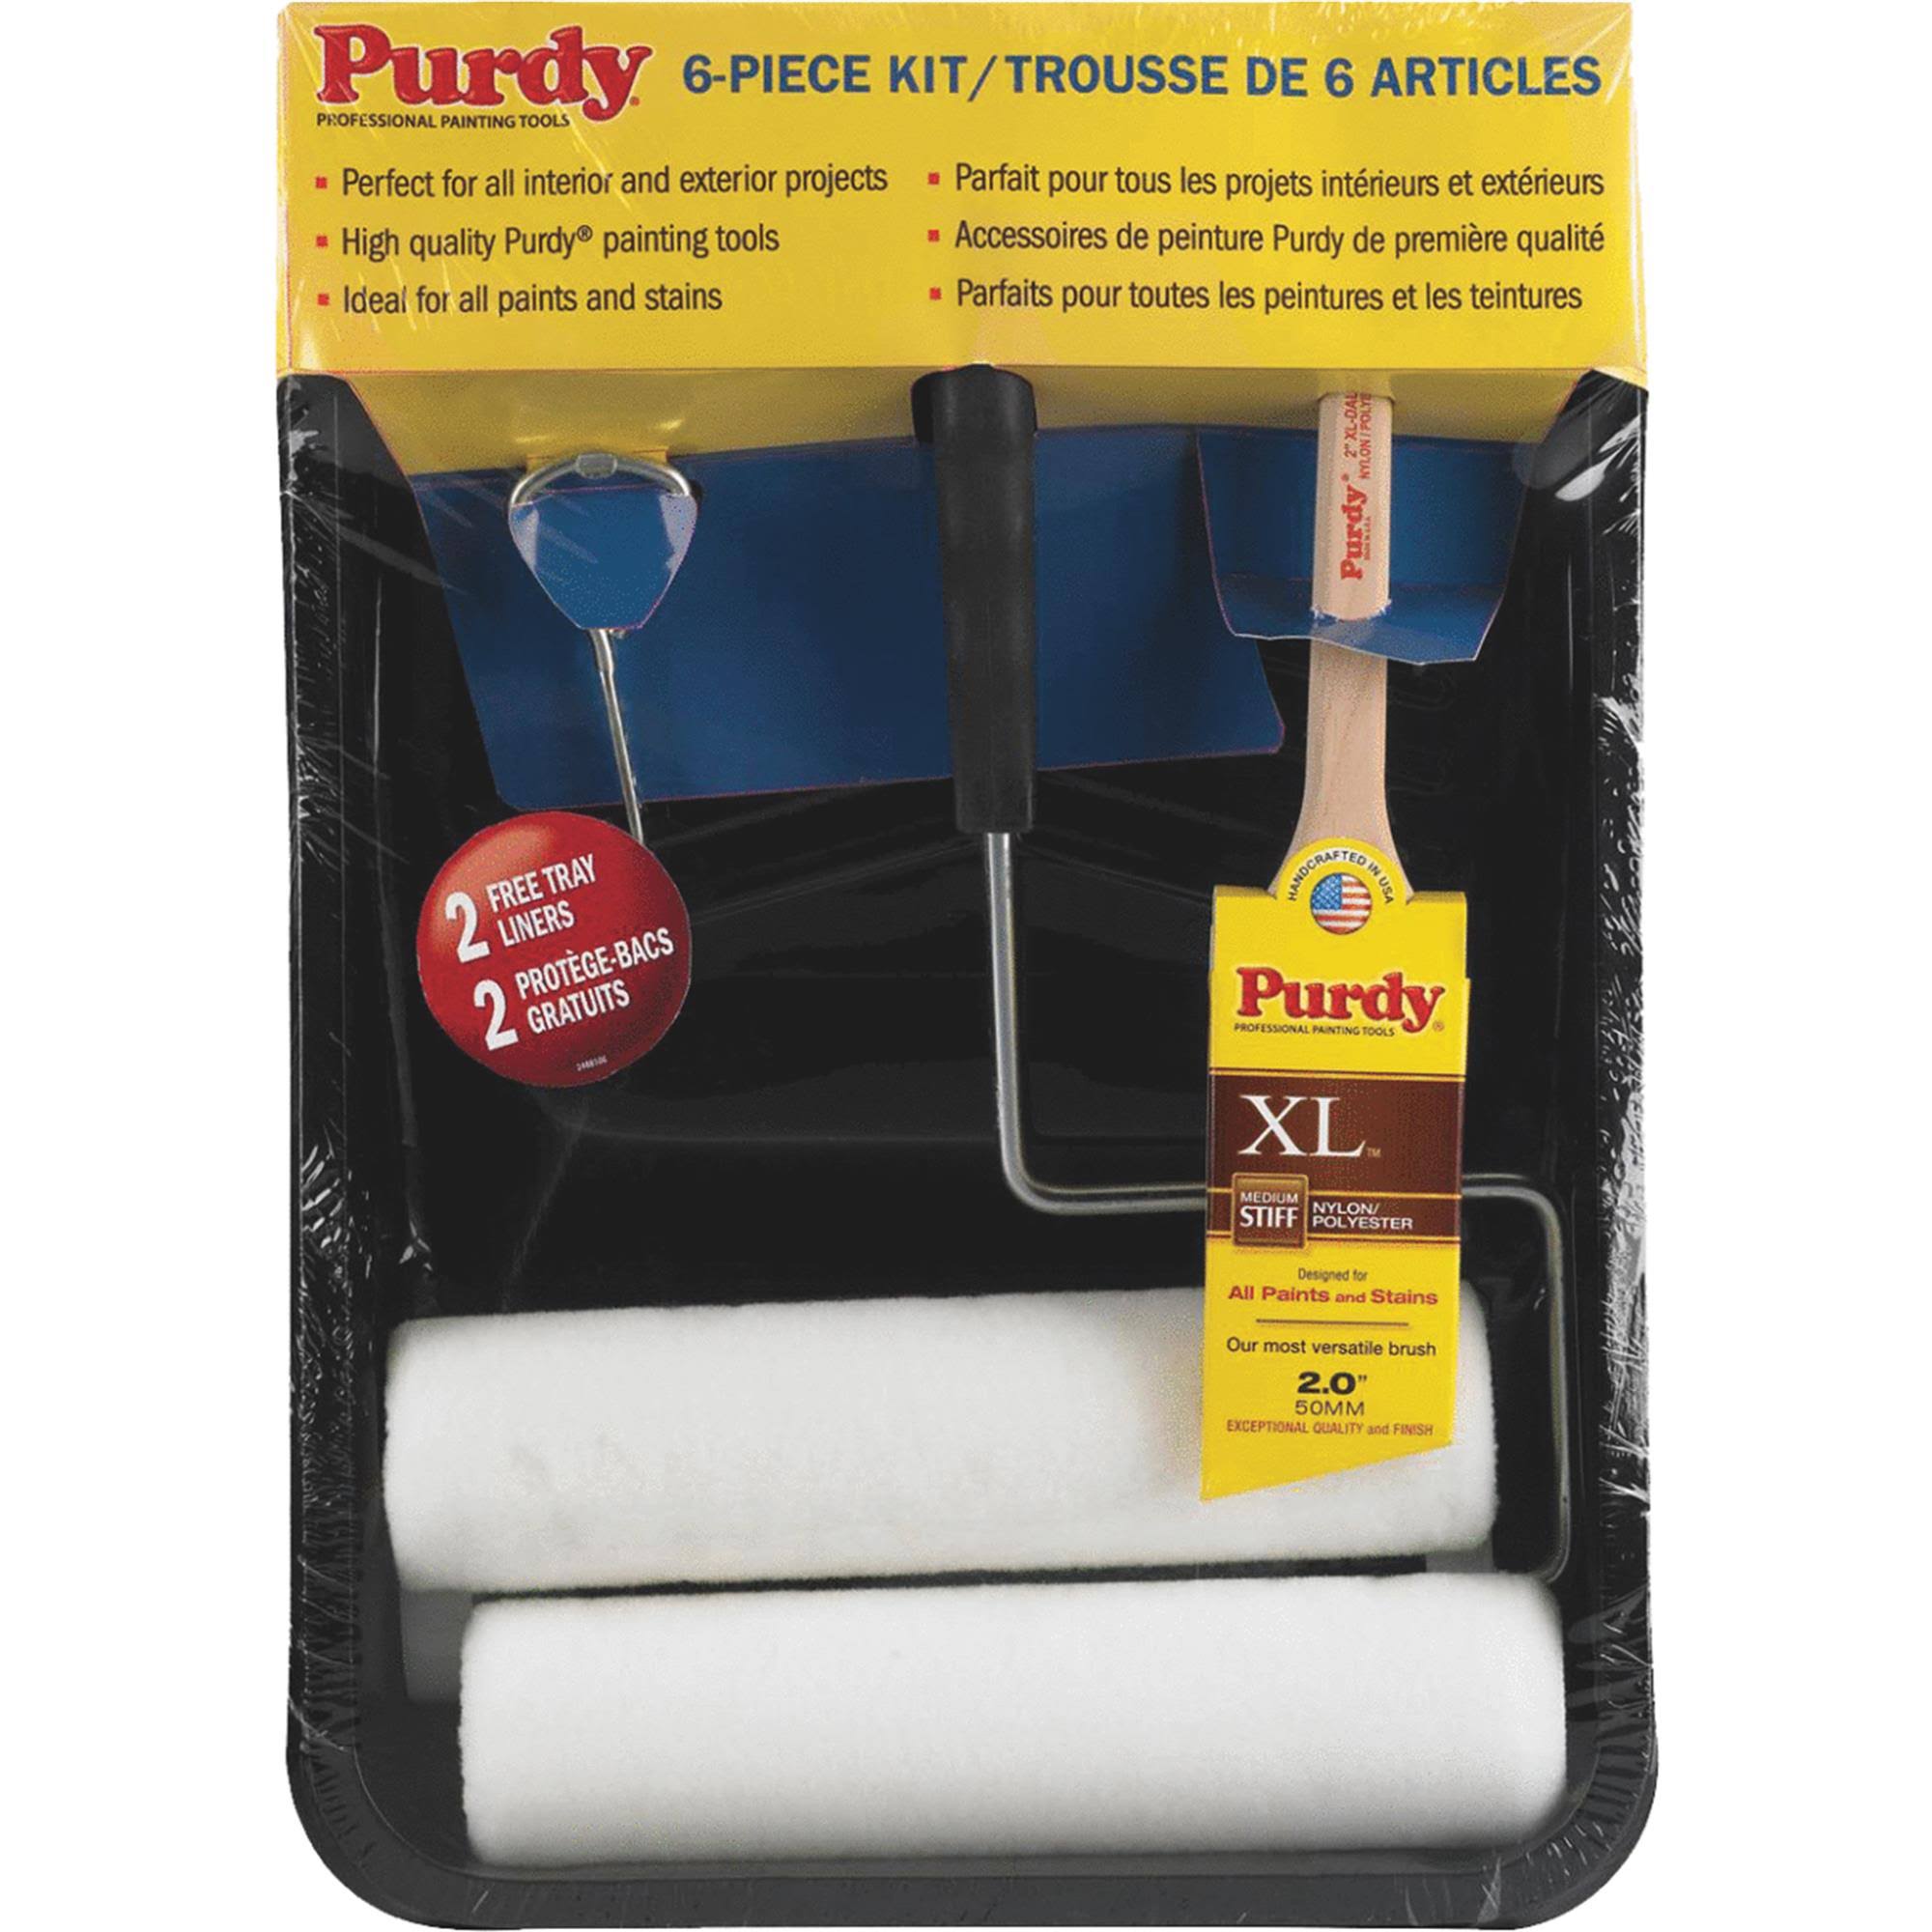 Purdy Premium Paint Kit - 6 Piece Painting Kit